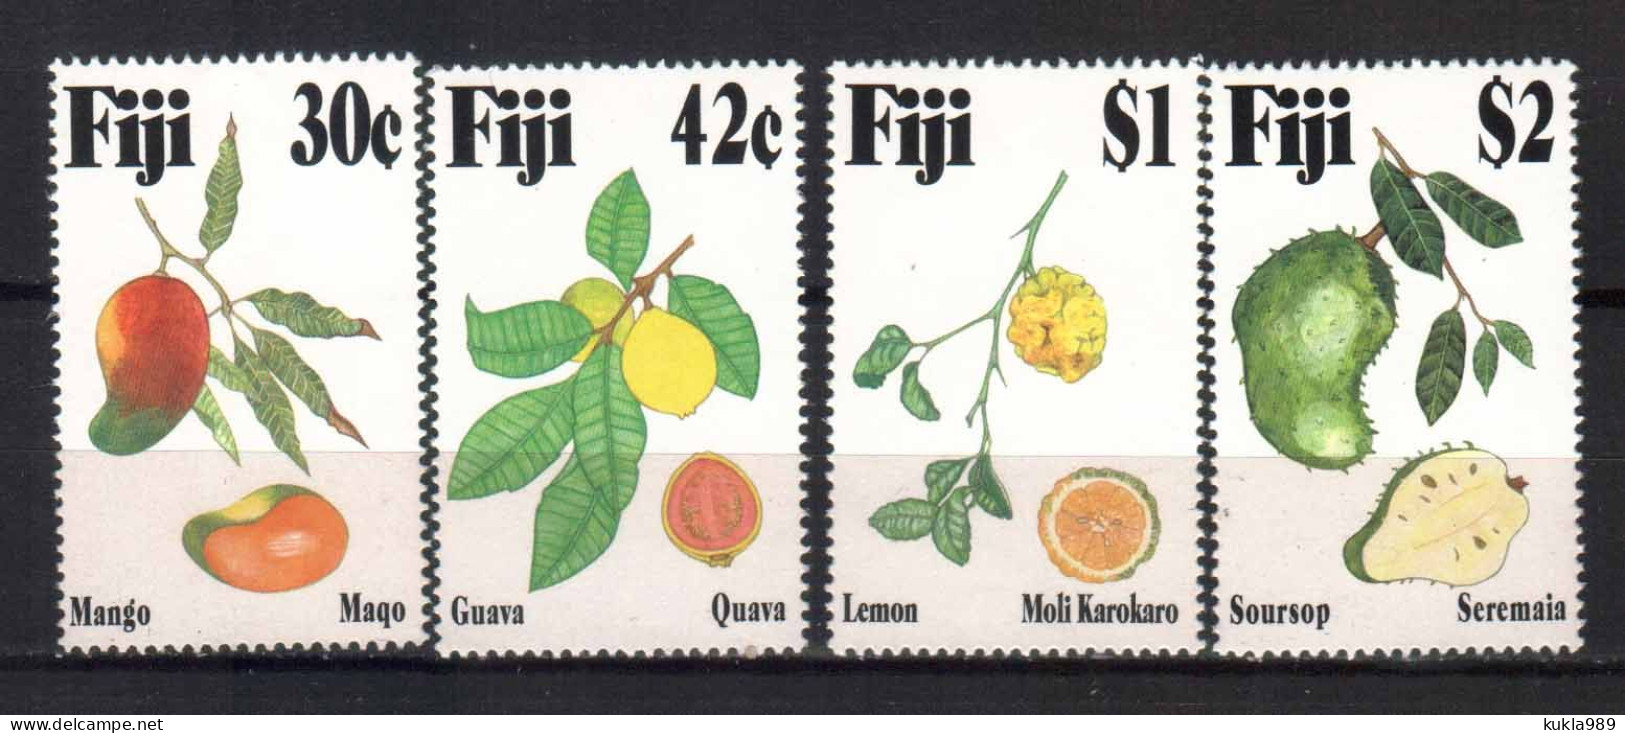 FIJI STAMPS. 1993, TROPICAL FRUITS, MNH - Fiji (1970-...)